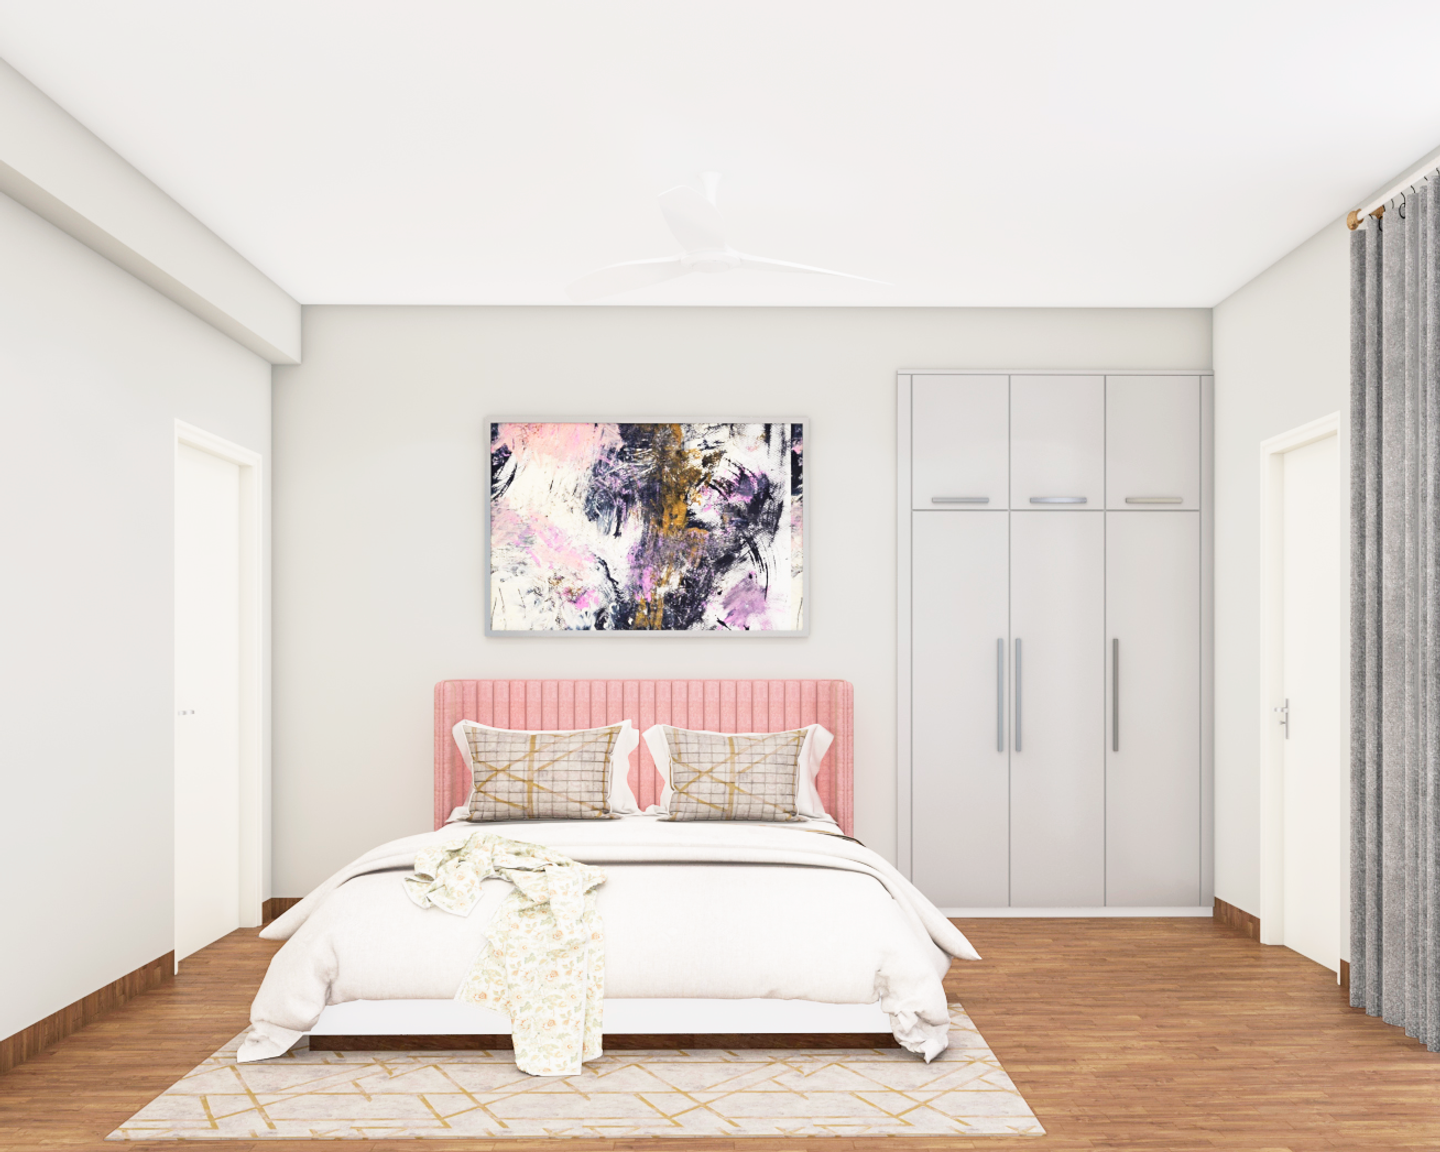 Textured Wodden Floor Tile Design For Bedrooms - Livspace